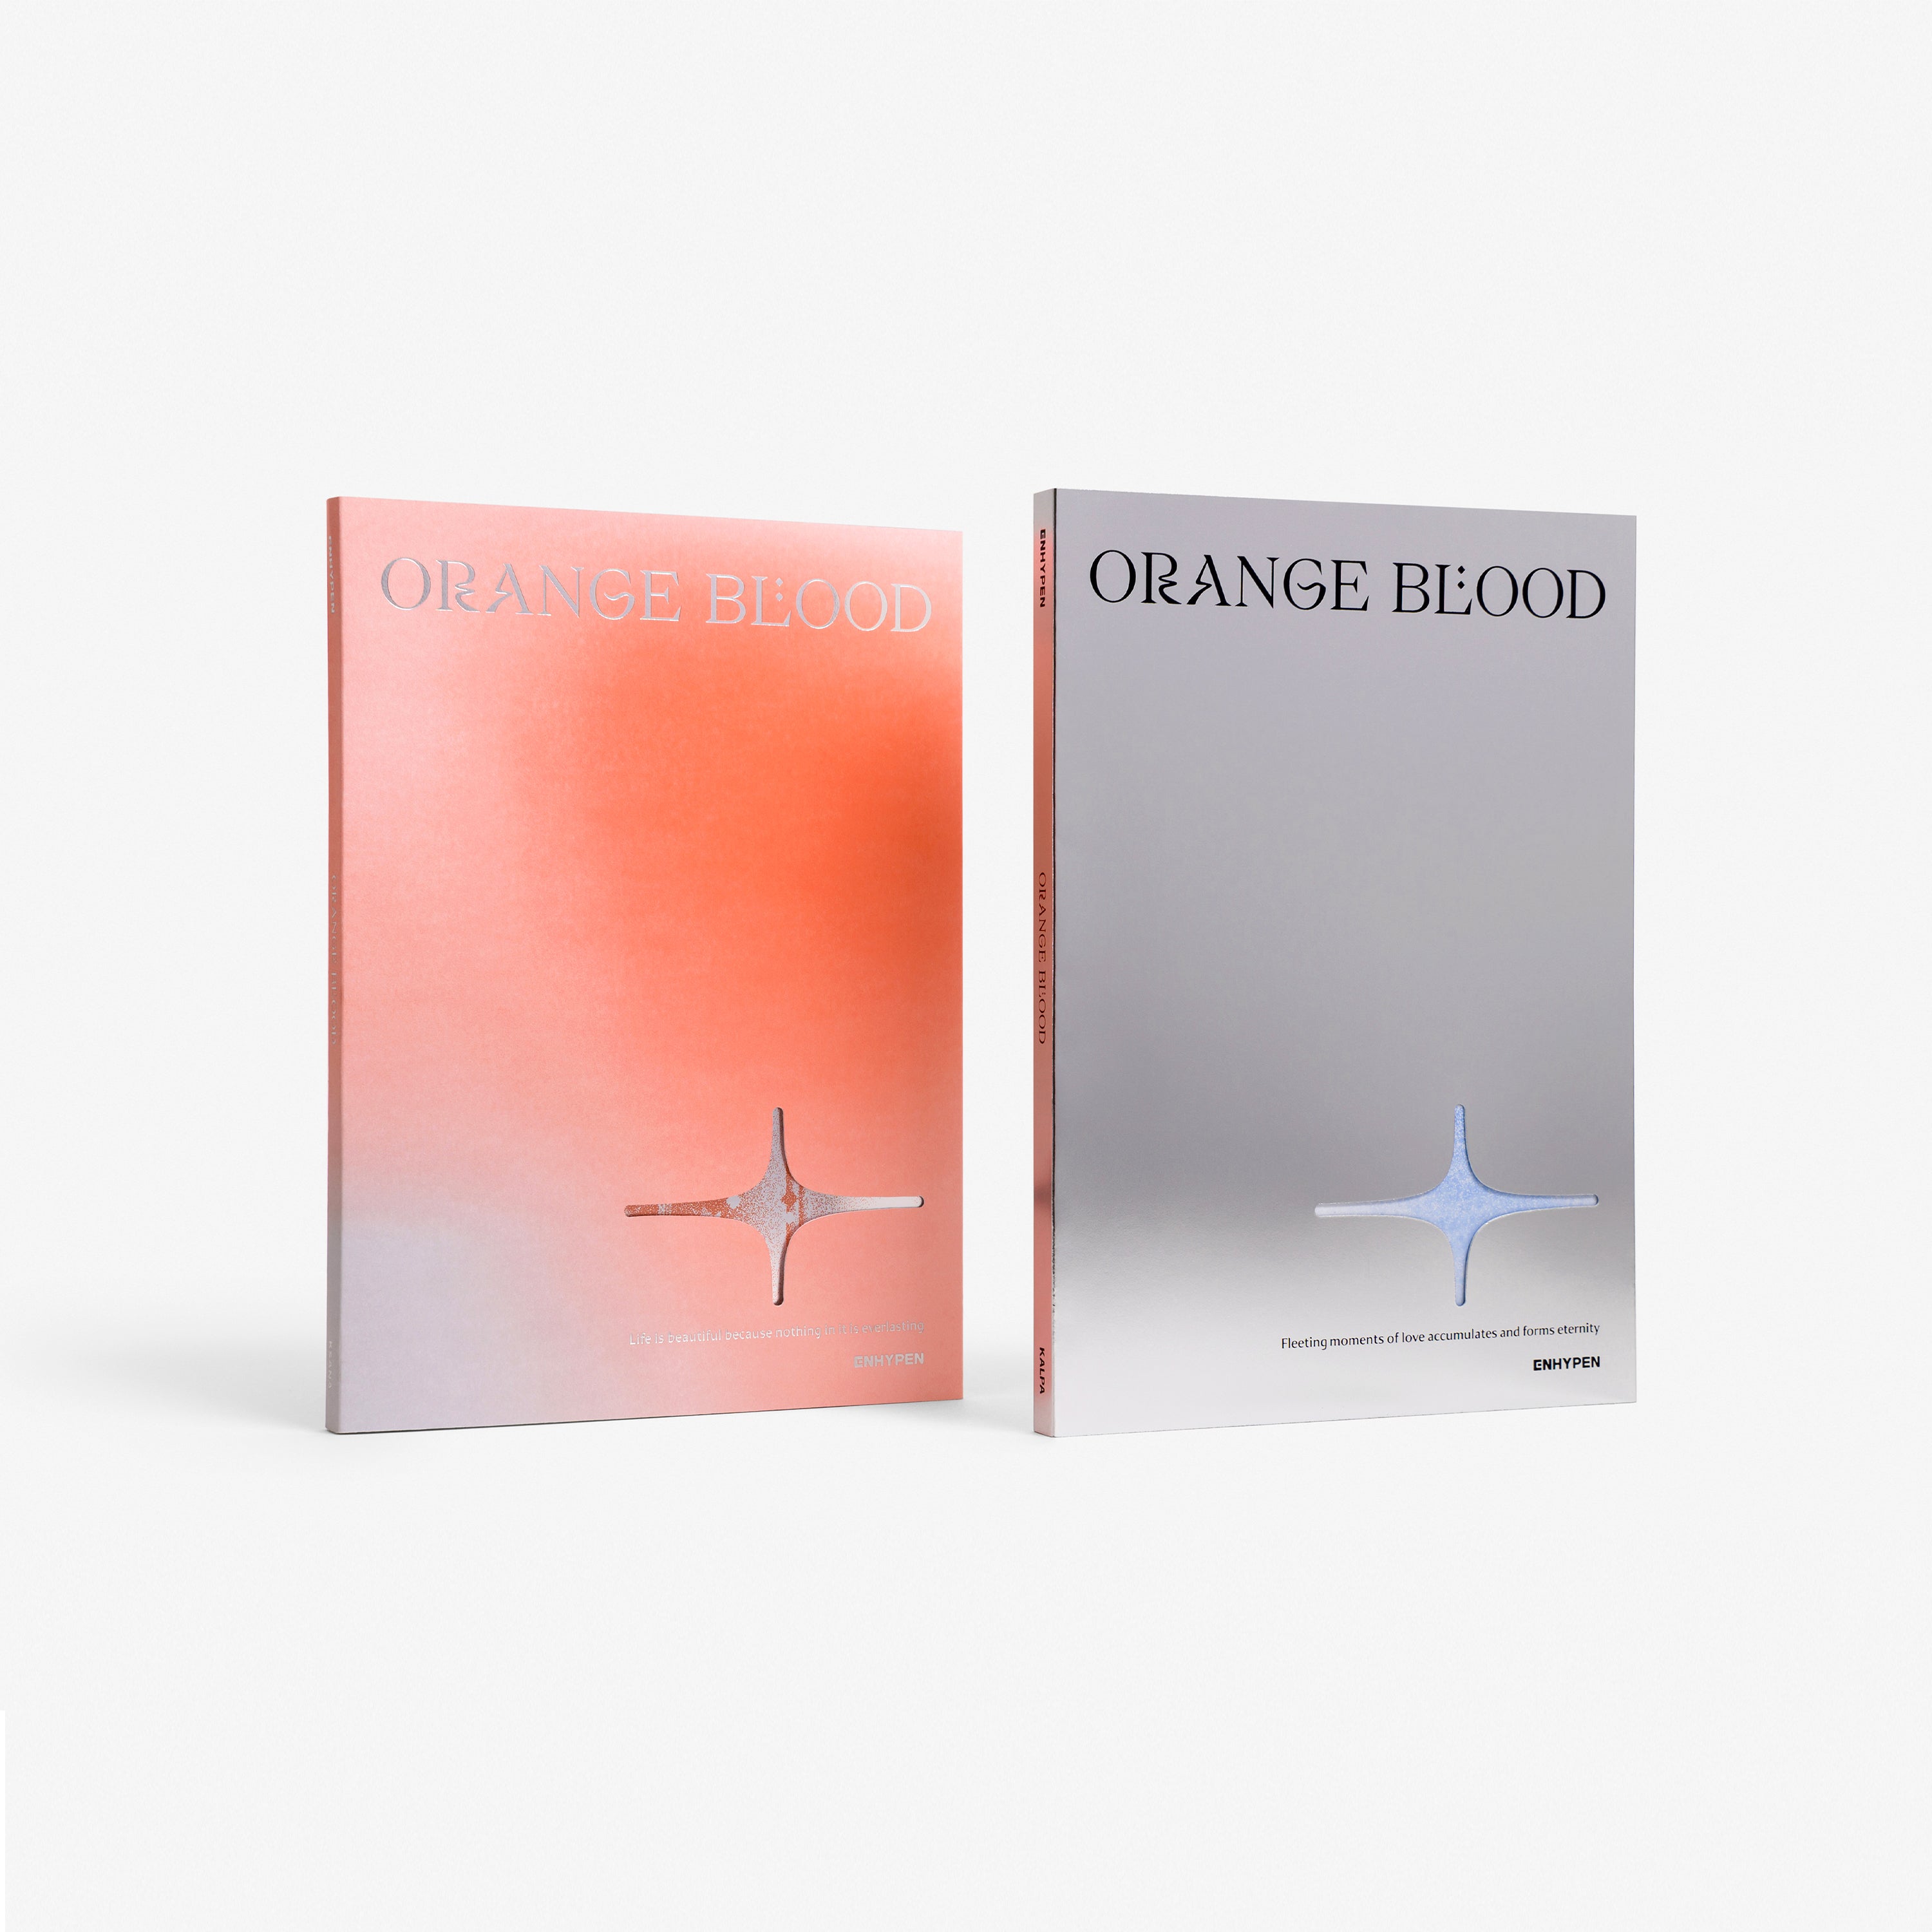 ENHYPEN - 5th Mini Album ORANGE BLOOD